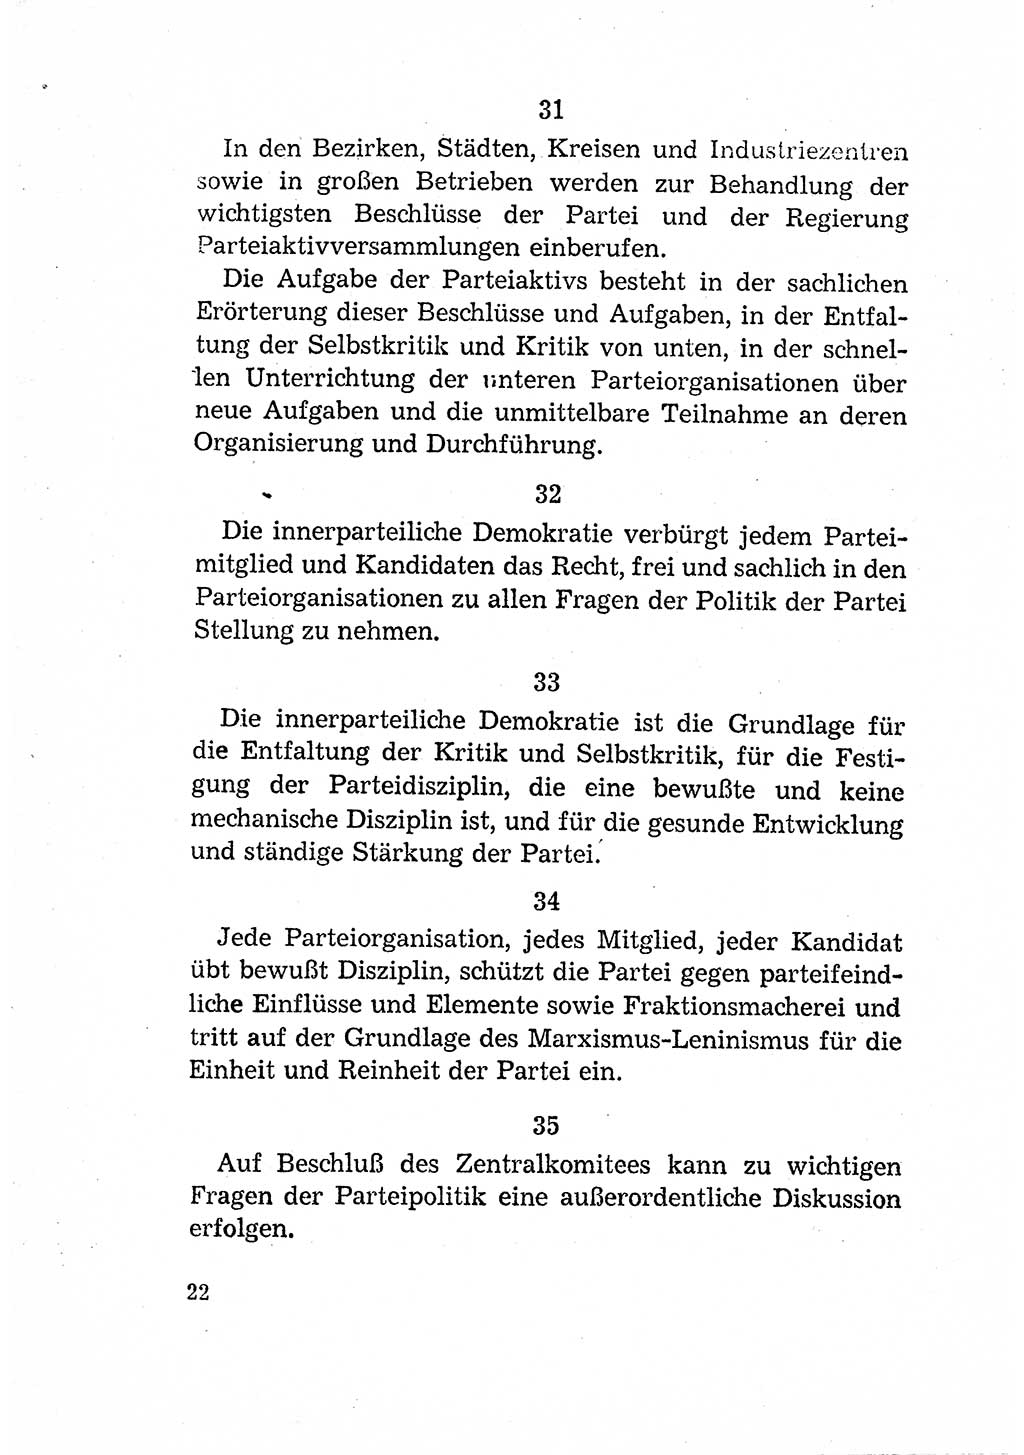 Statut der Sozialistischen Einheitspartei Deutschlands (SED) [Deutsche Demokratische Republik (DDR)] 1958, Seite 22 (St. SED DDR 1958, S. 22)